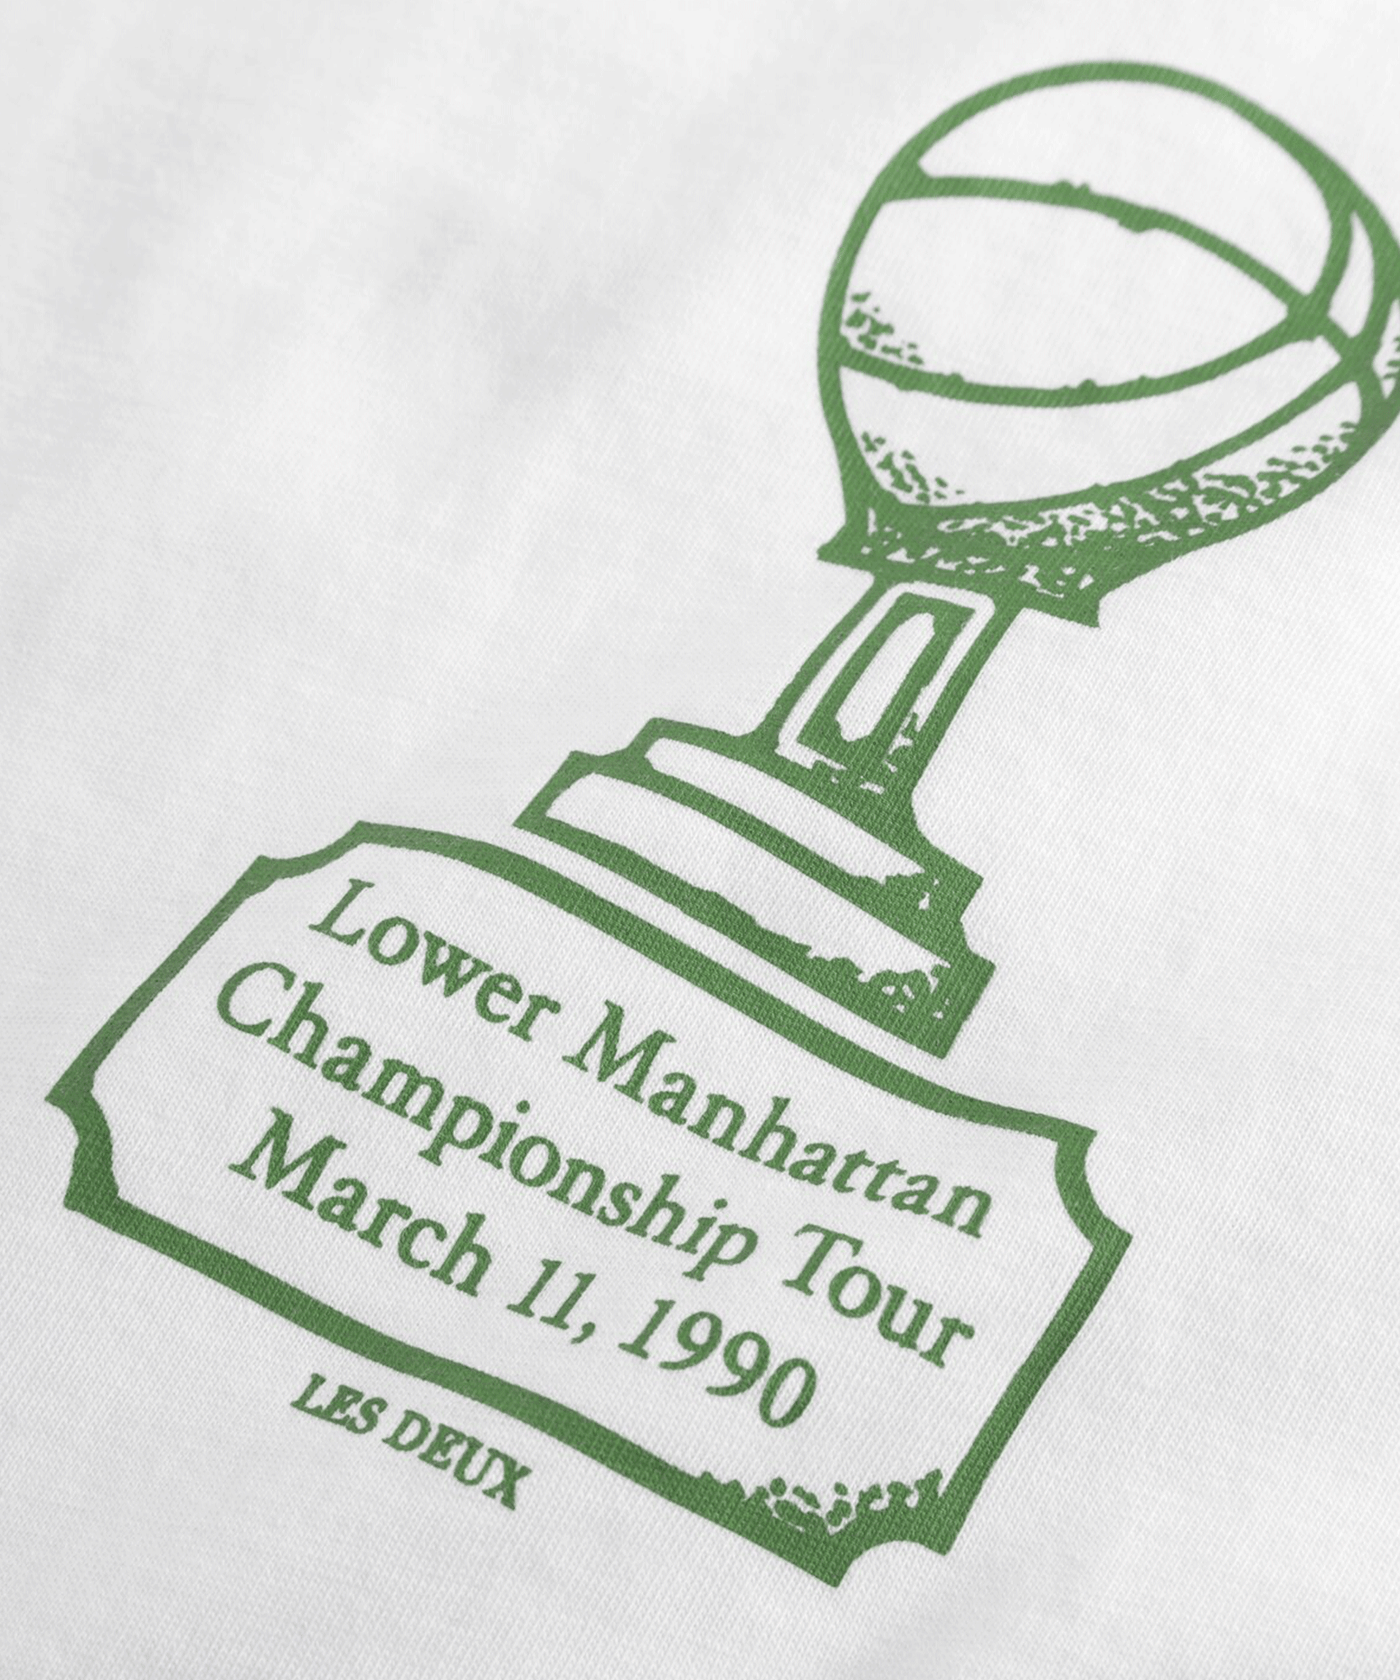 Les Deux - Ldm101182 - Tournament T-shirt - White/green